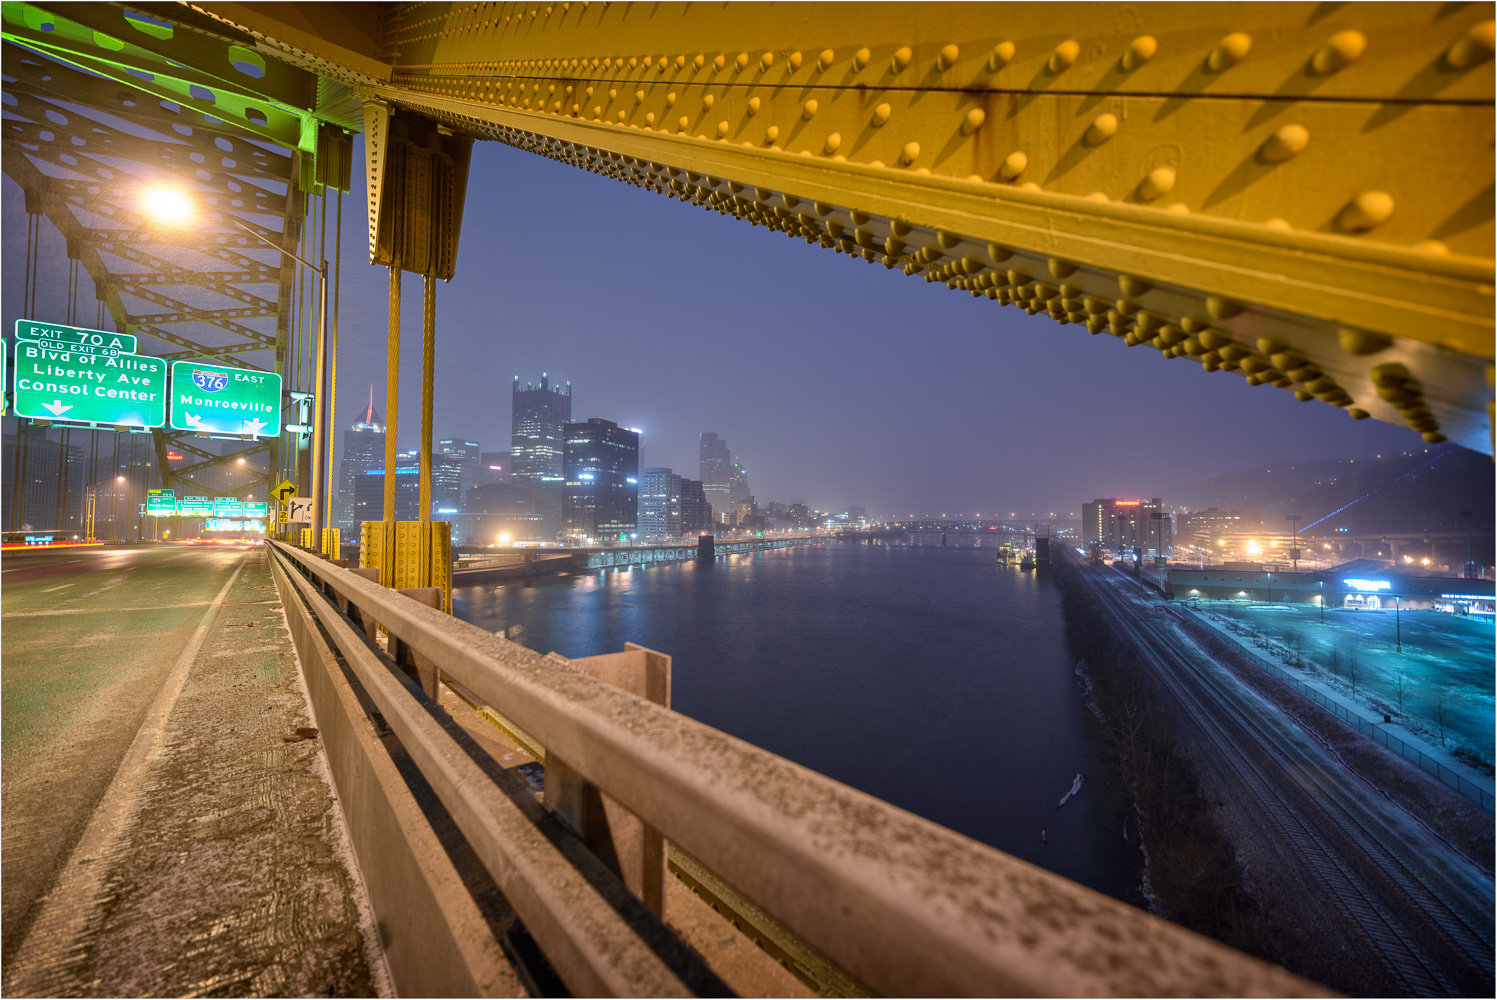 Framed-By-The-Fort-Pitt-Bridge.jpg